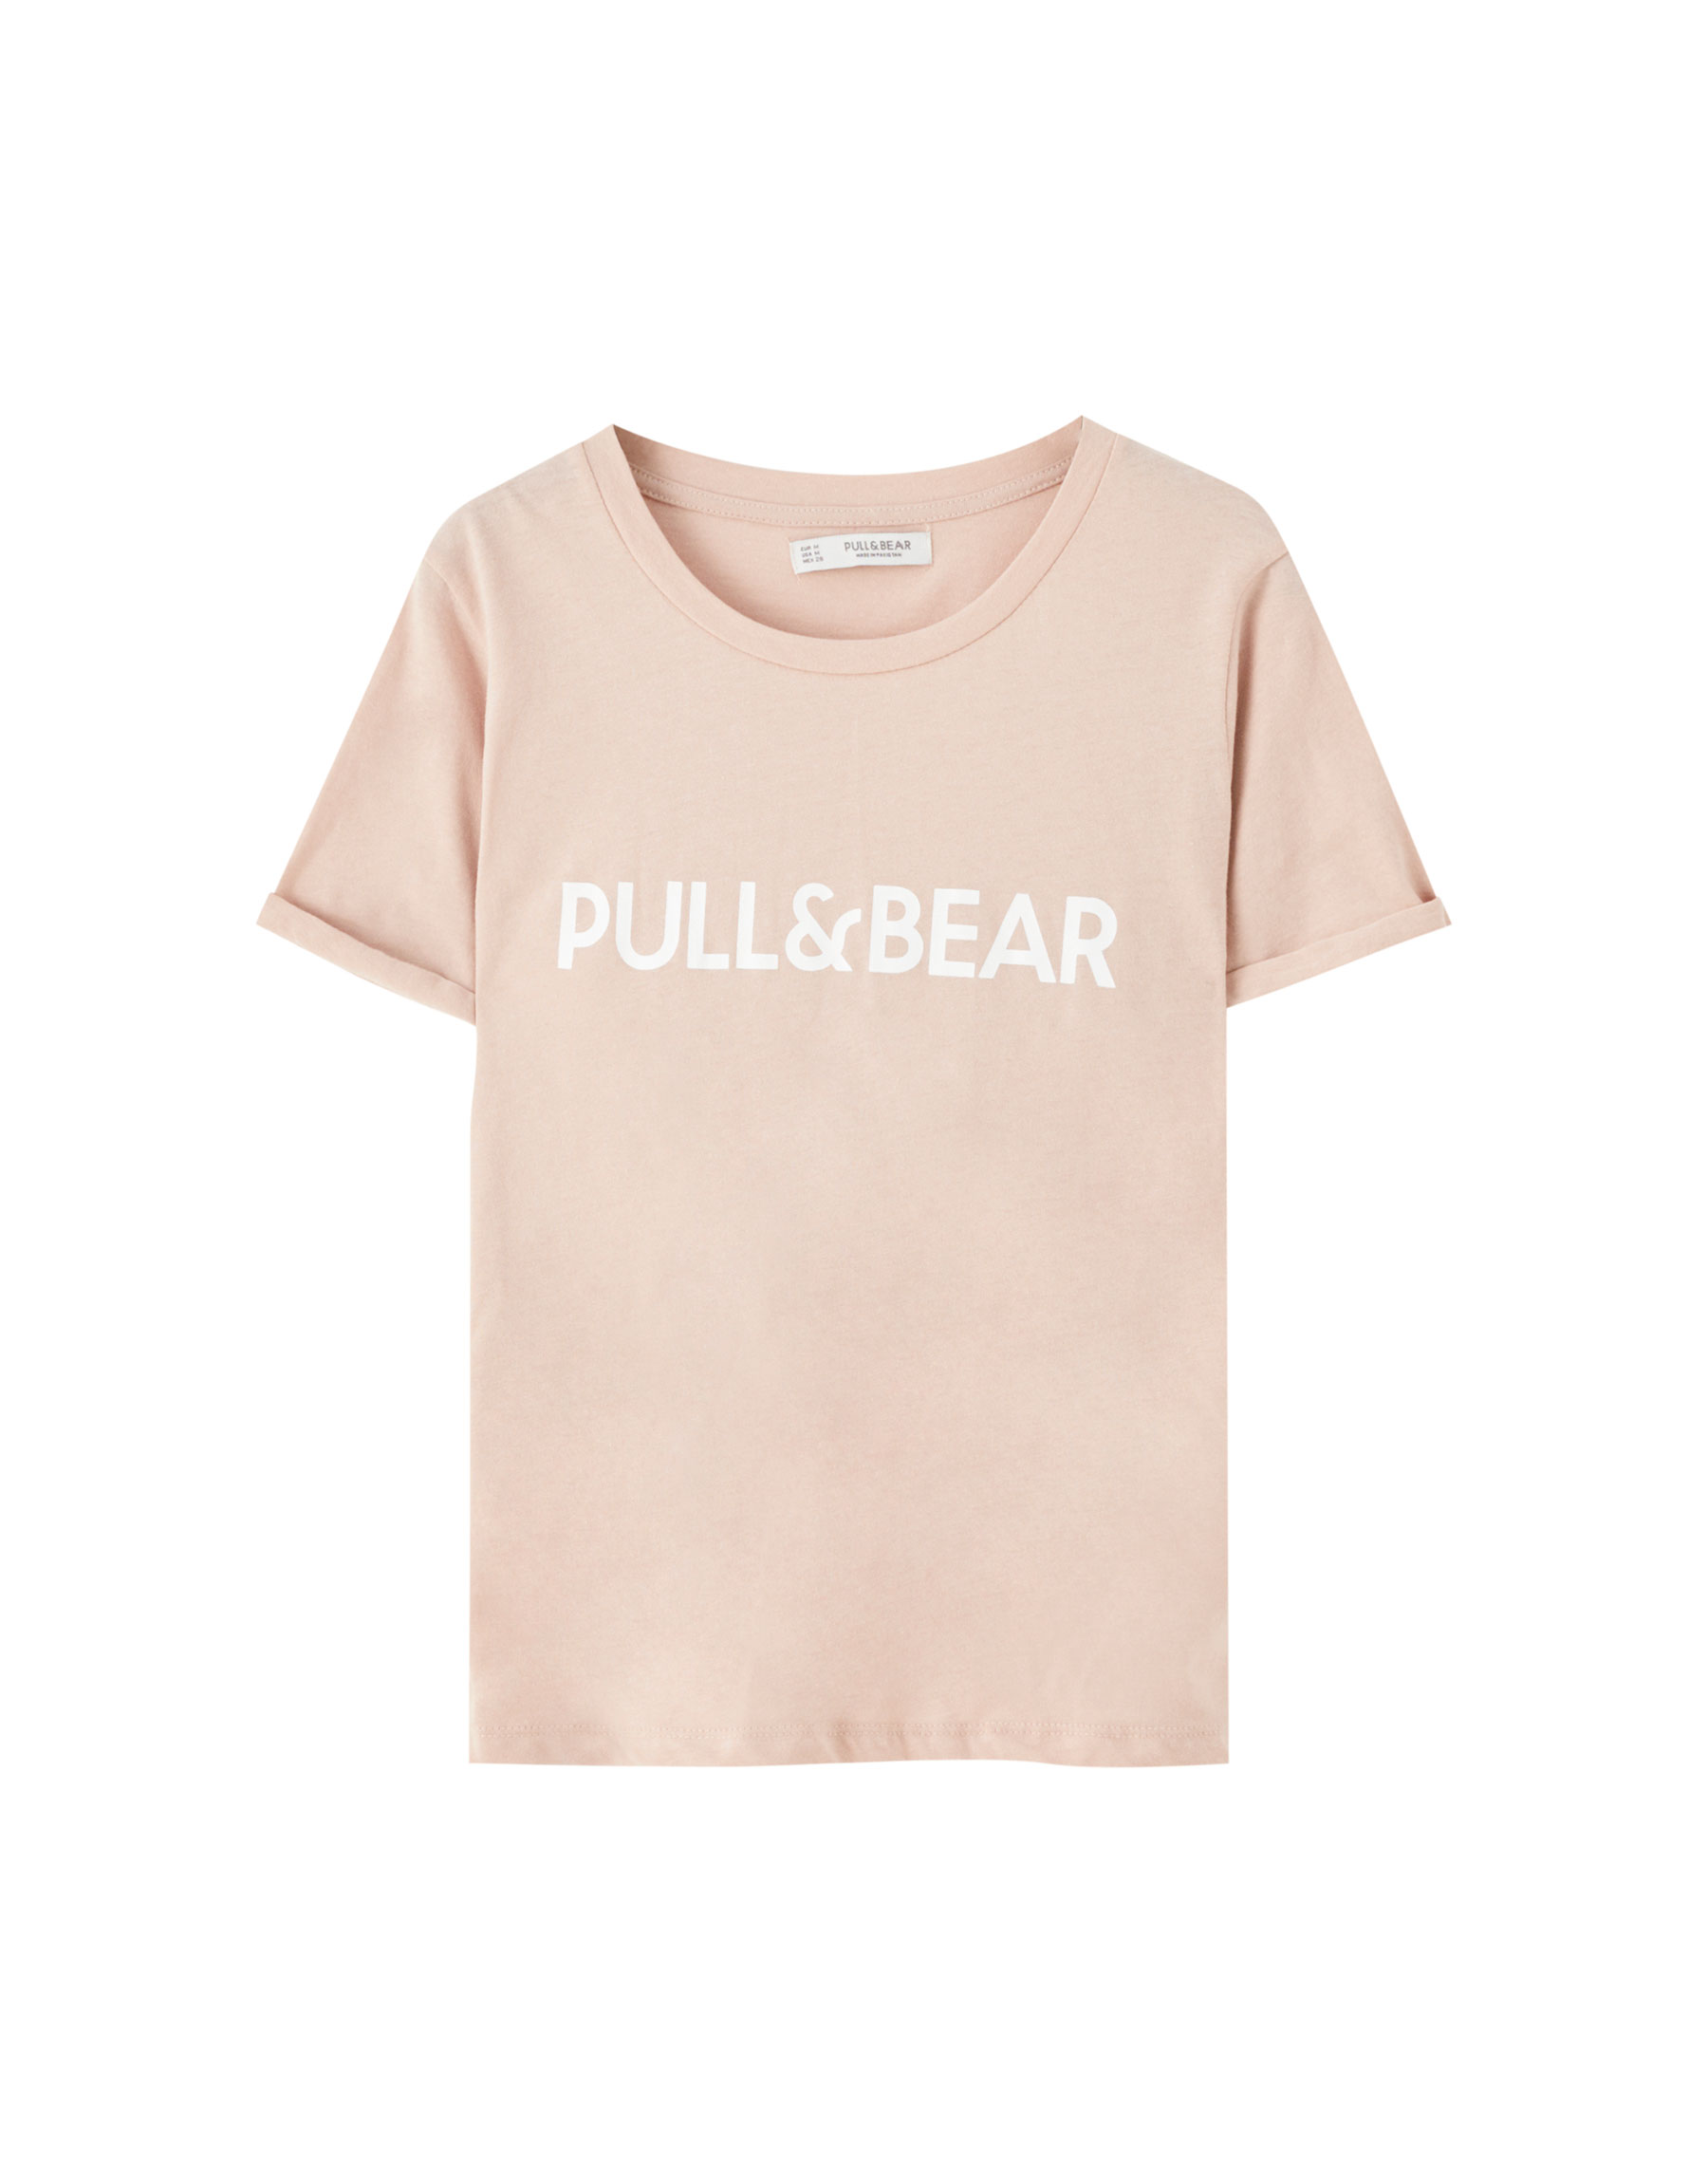 Цветная футболка с логотипом Pull&Bear ЦВЕТ РОЗОВОГО ДЕРЕВА Pull & Bear